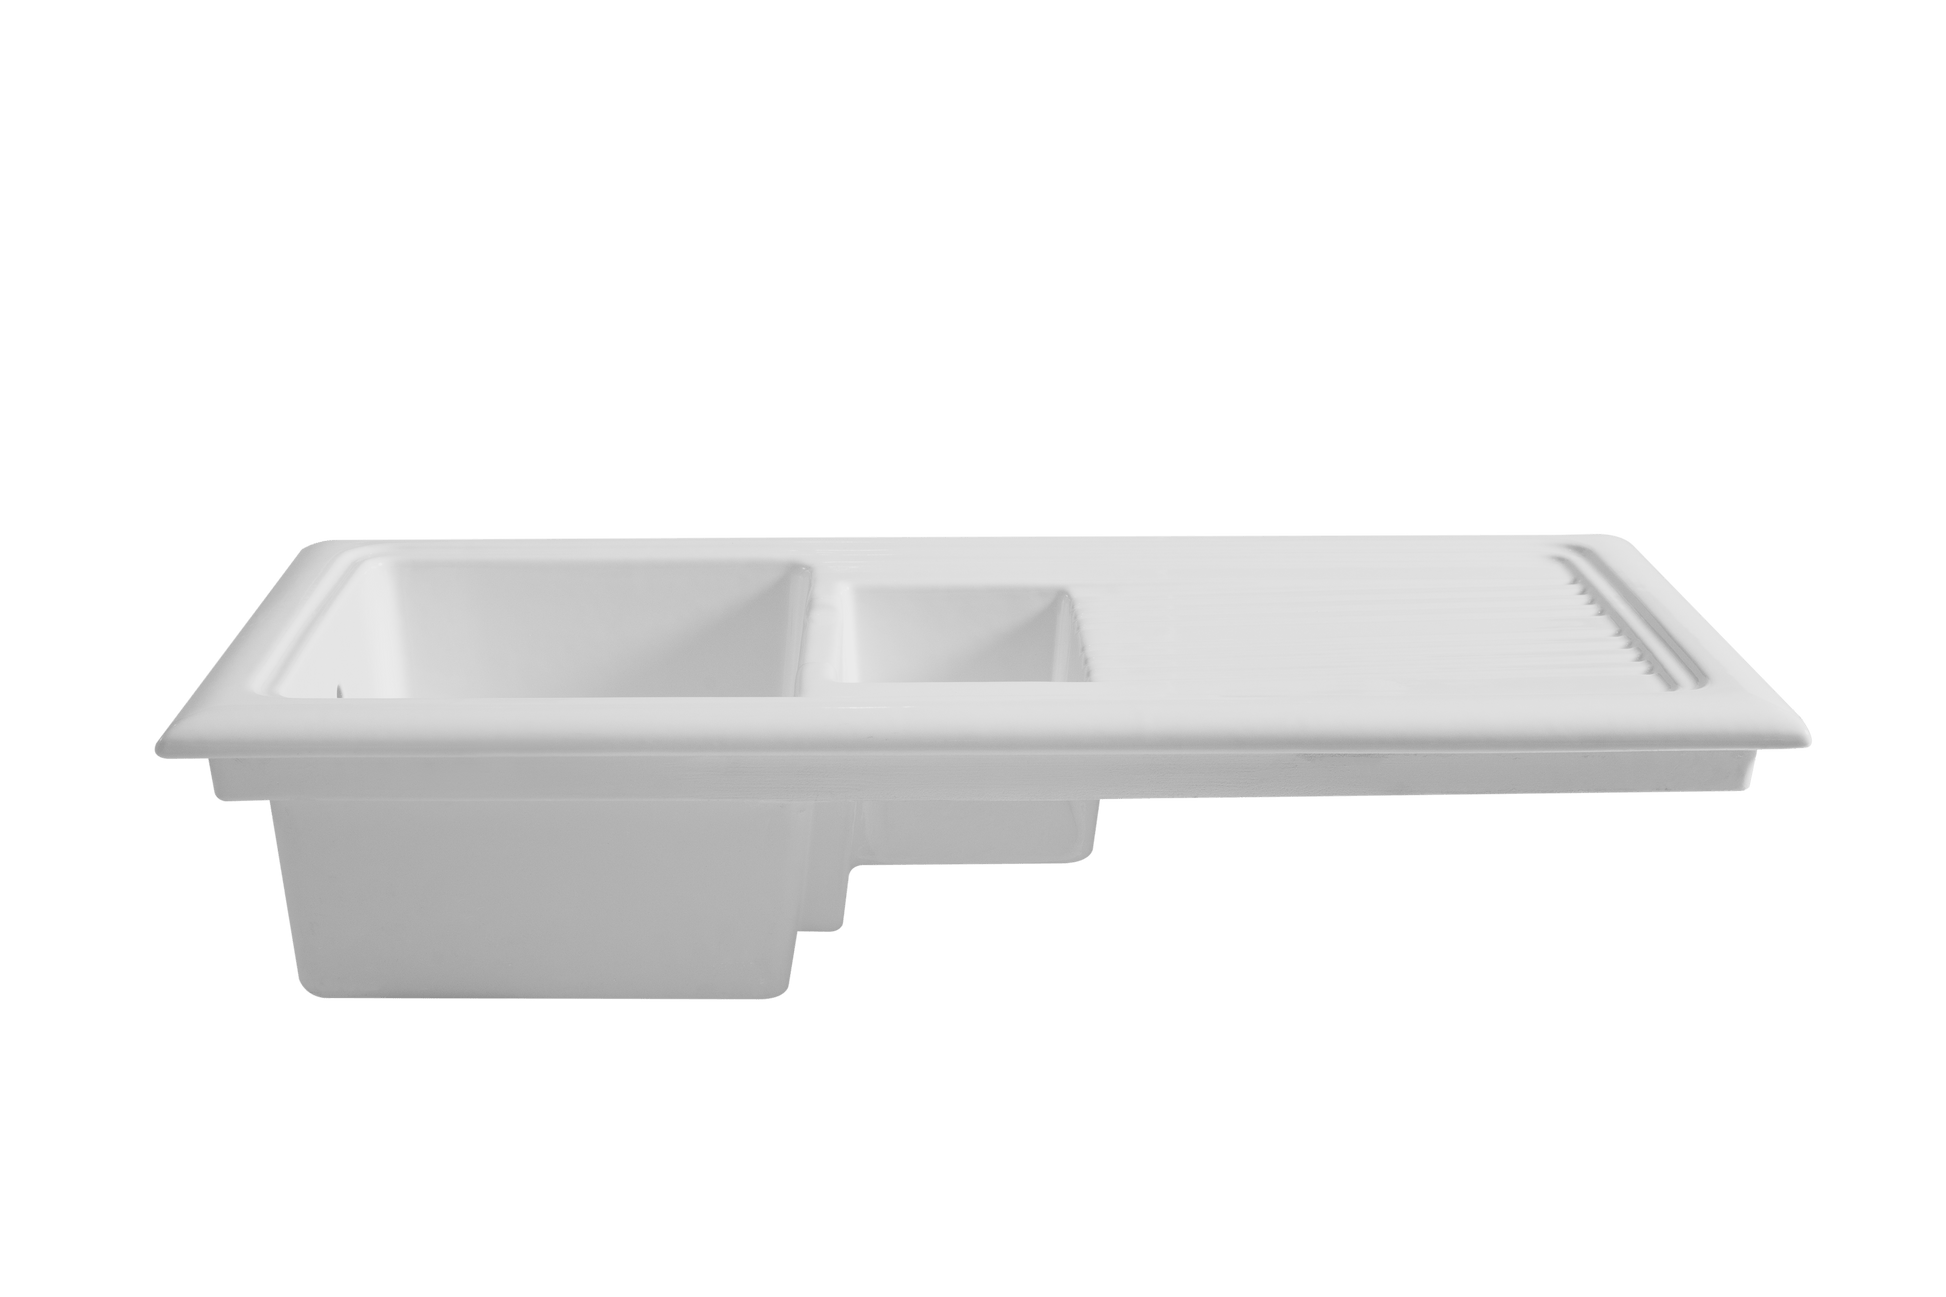 Ceramic 1.5 Sink